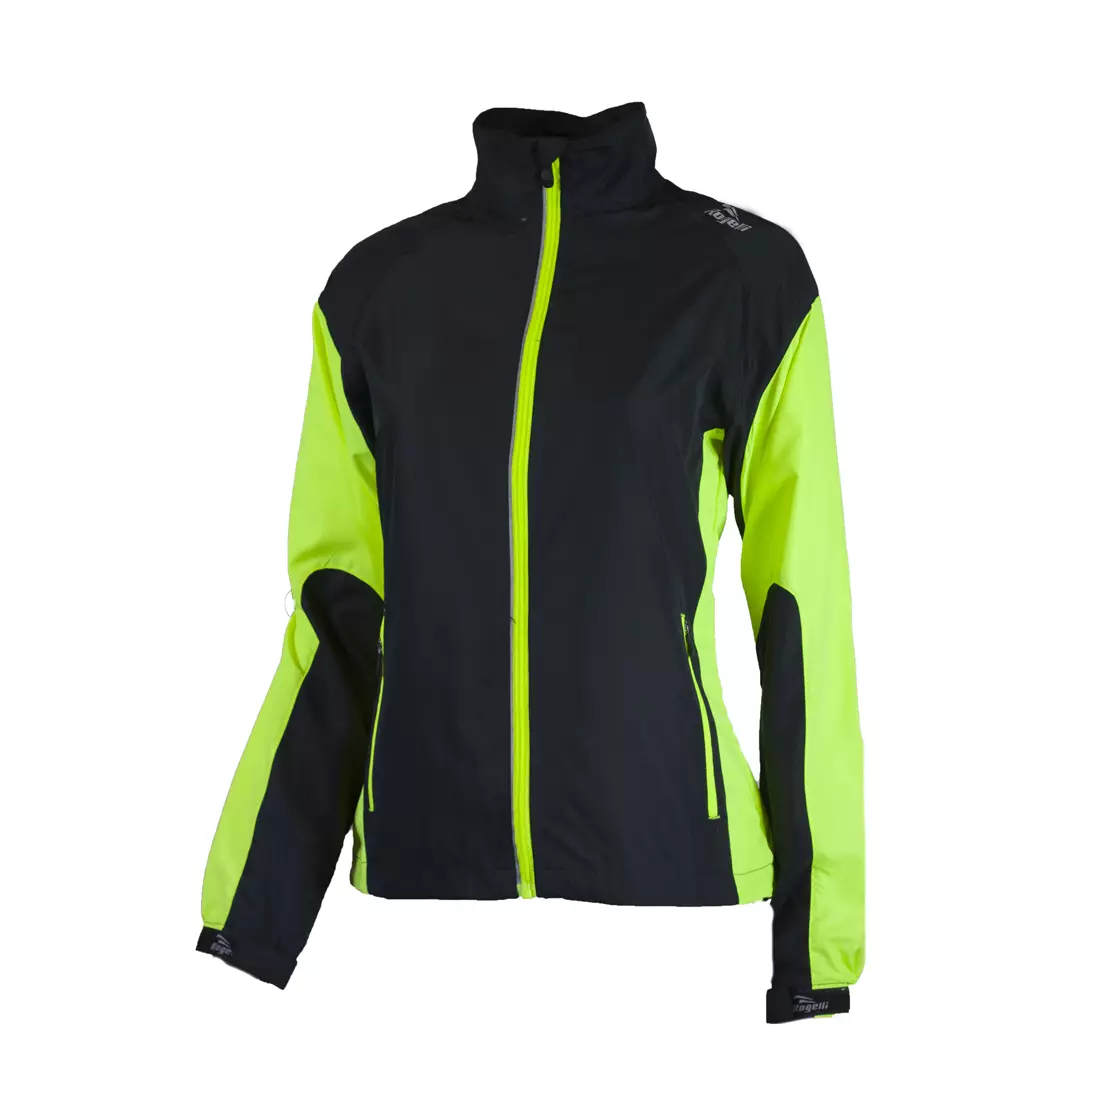 ROGELLI RUN ELVI - dámská ultralehká běžecká bunda, černo-fluor